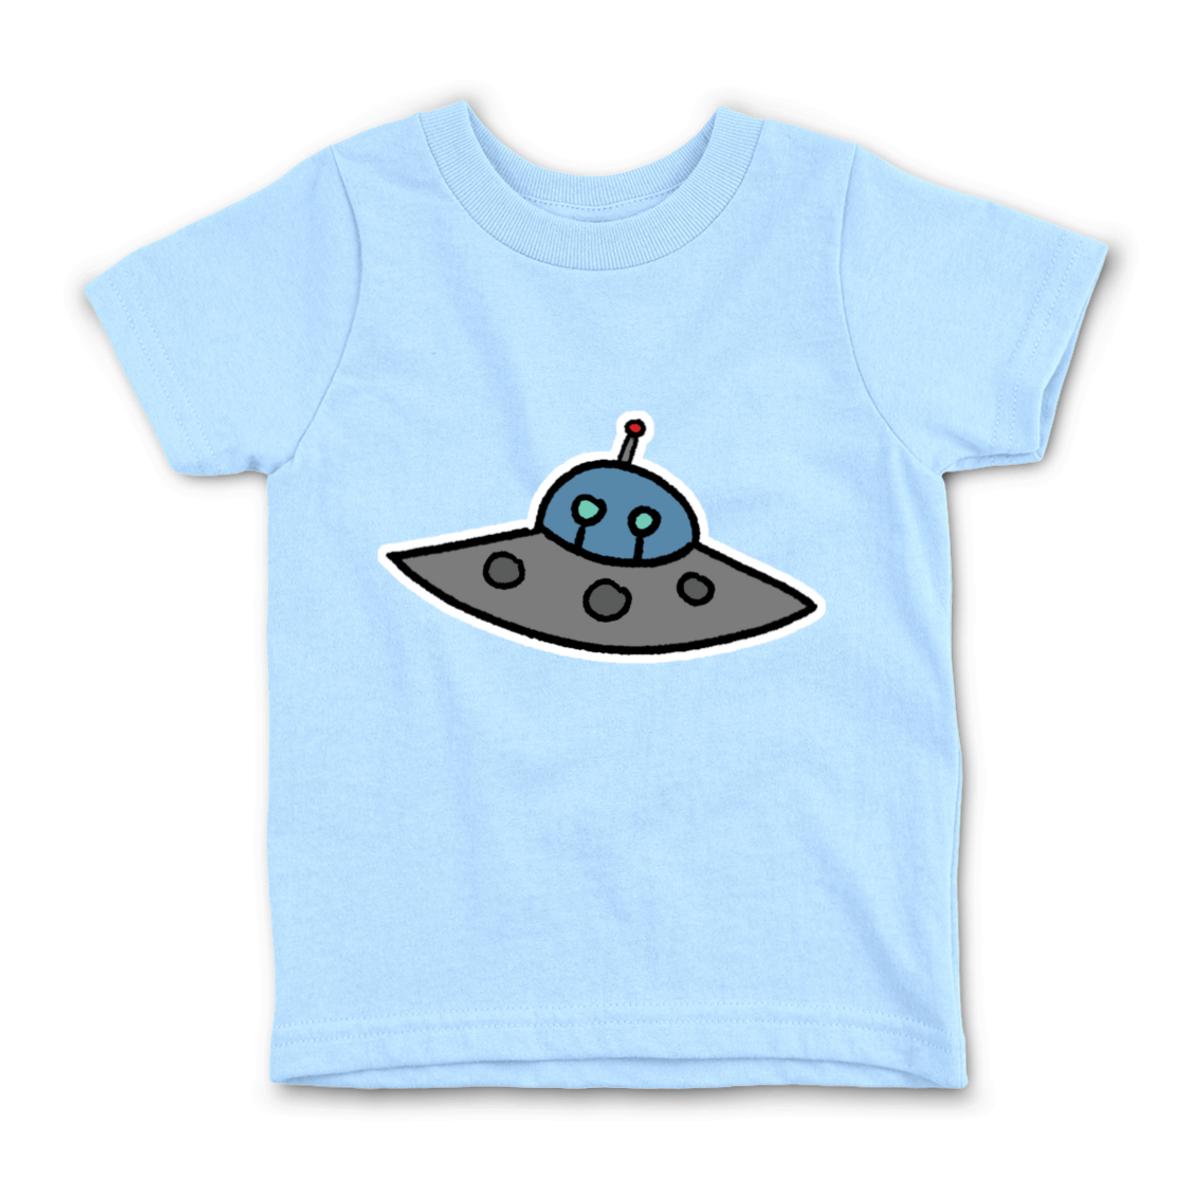 Flying Saucer Kid's Tee Medium light-blue